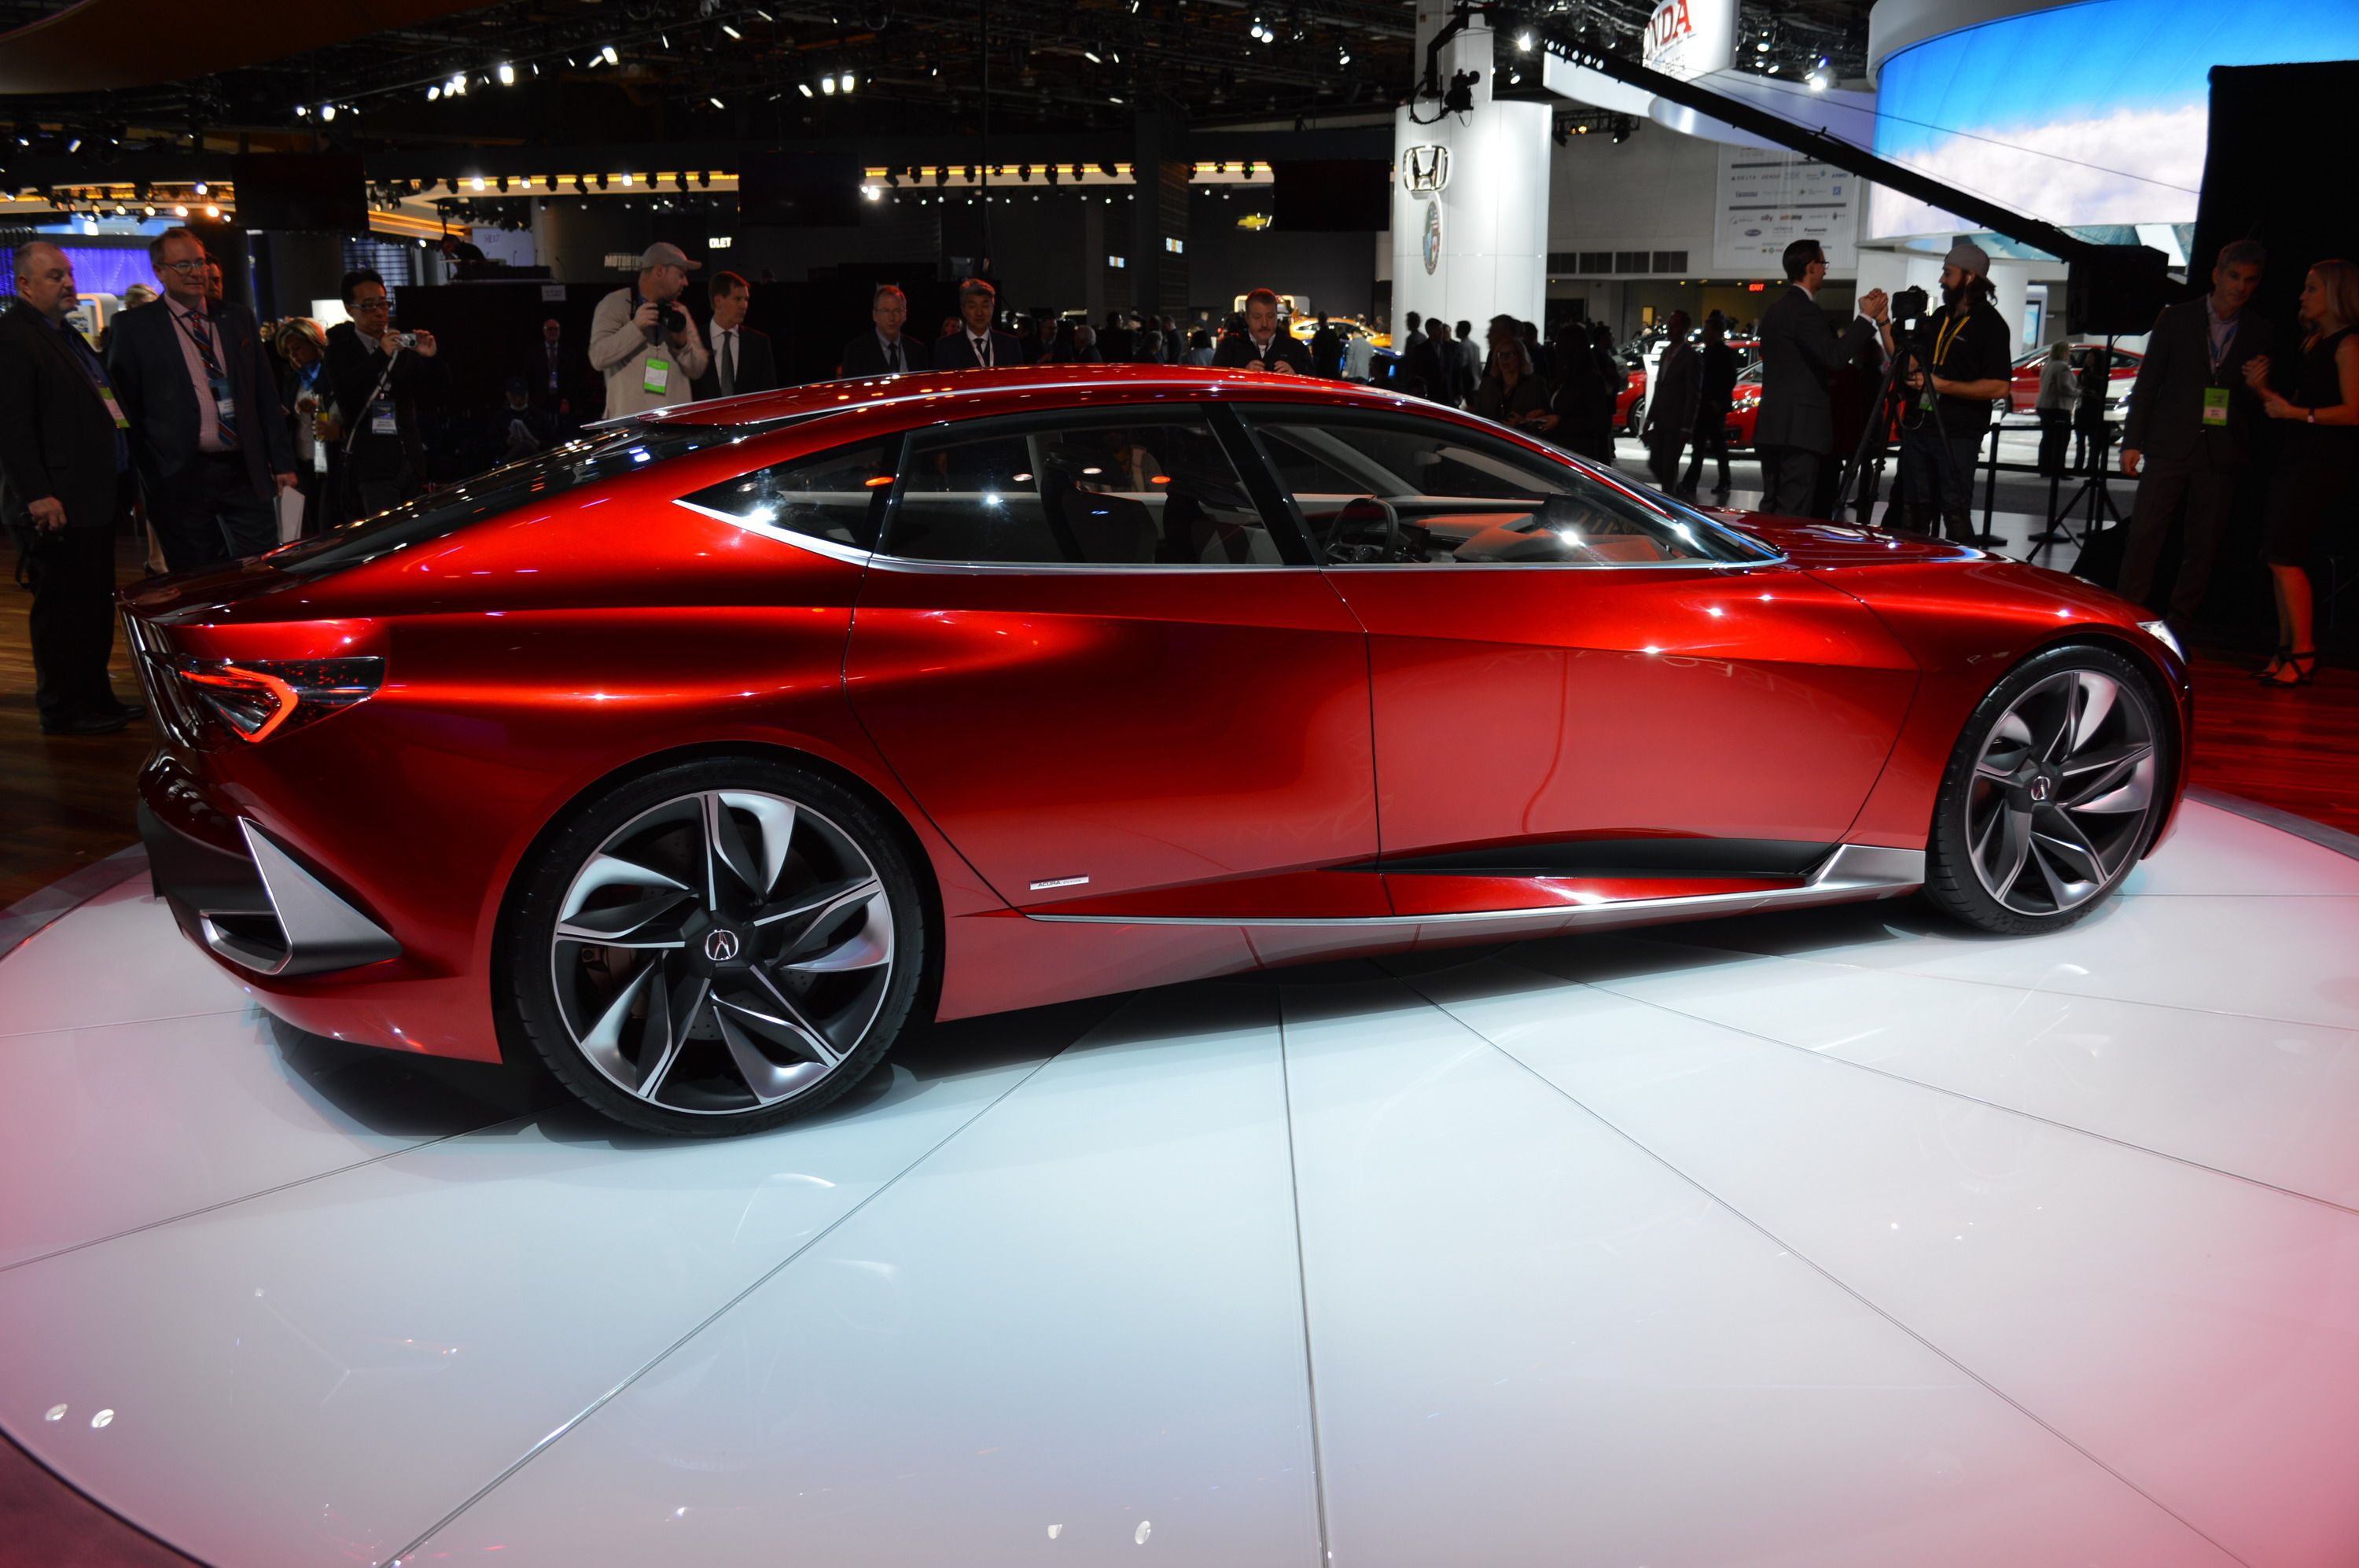 2017 Acura Precision Concept